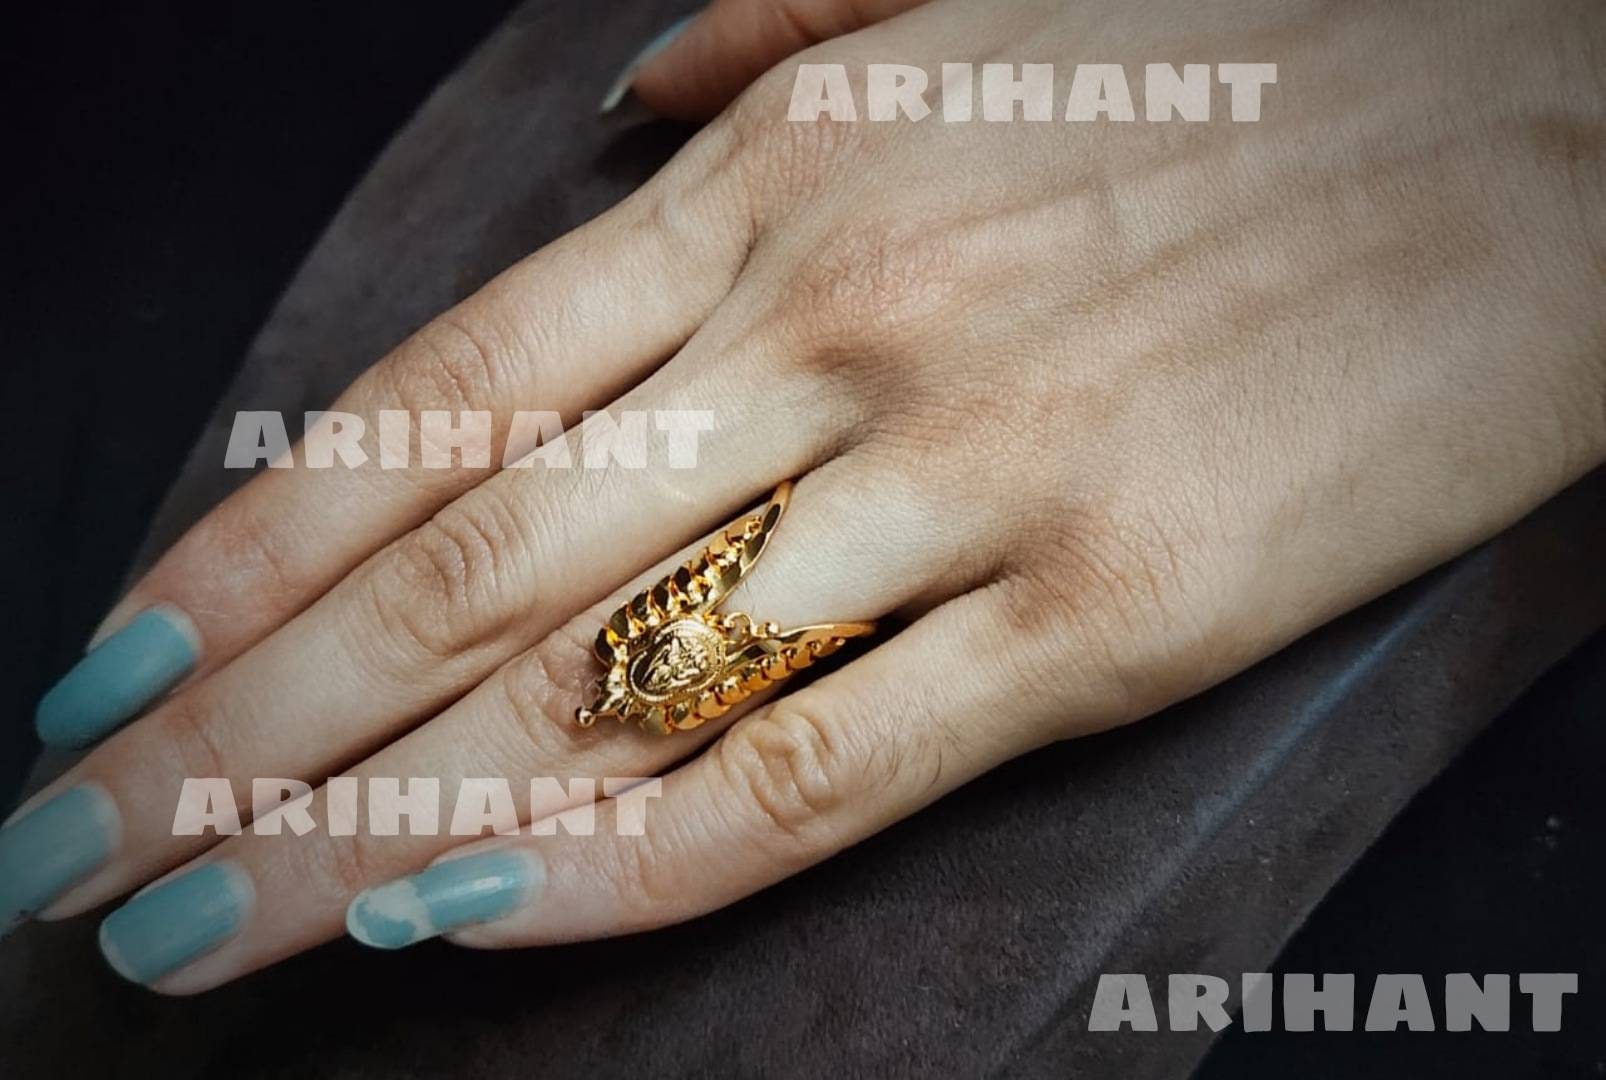 22K Gold Vanki Ring With Cz & Color Stones - 235-GVR367 in 5.400 Grams